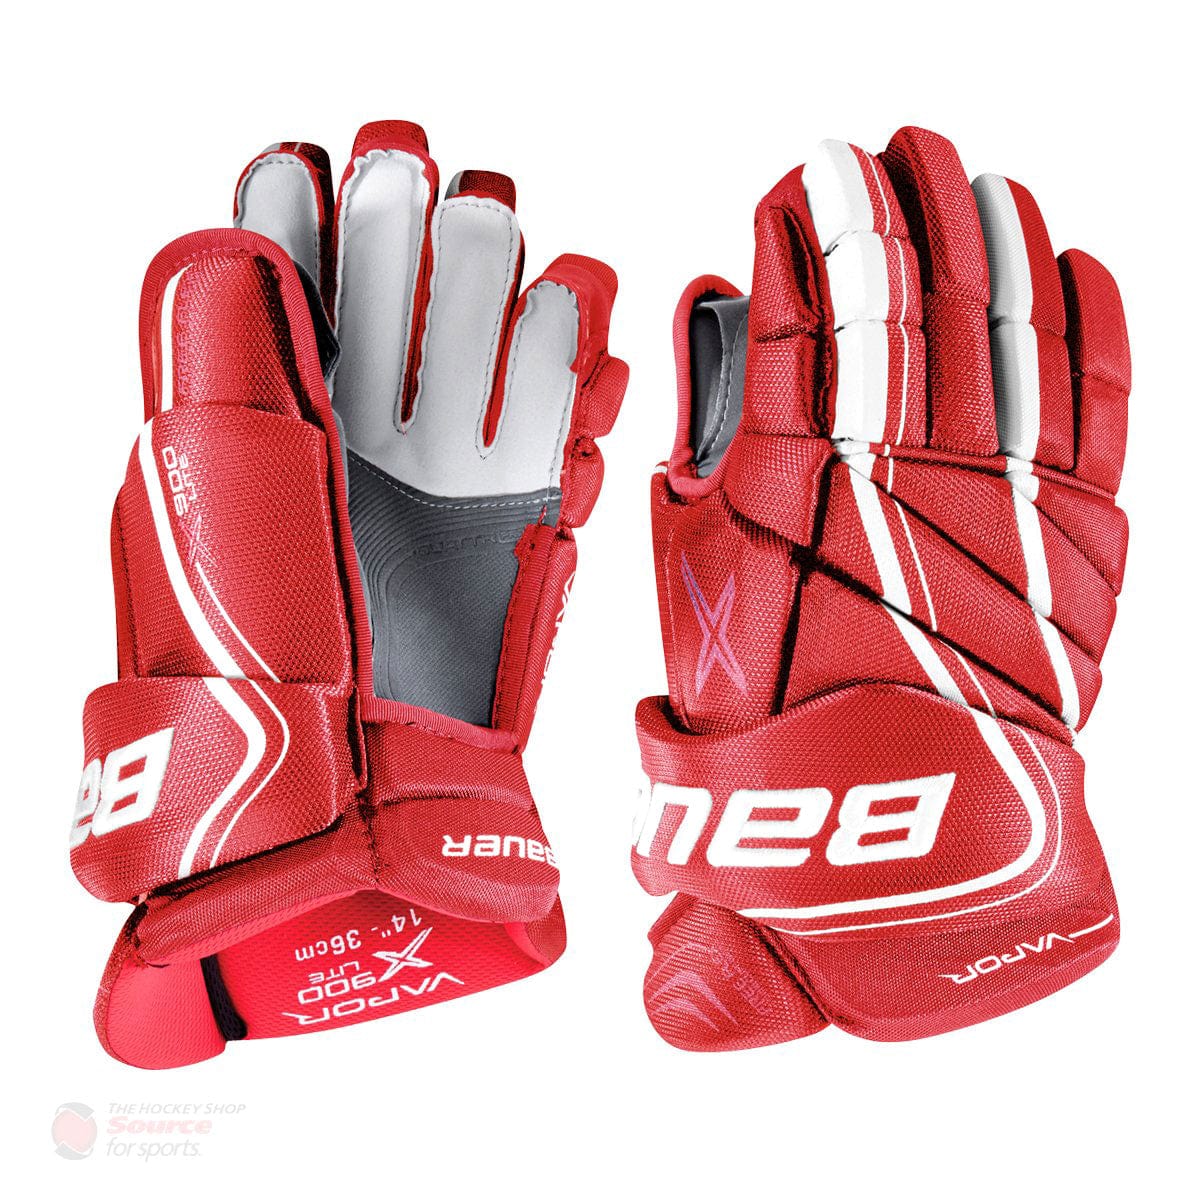 Bauer Vapor X900 Lite Senior Hockey Gloves